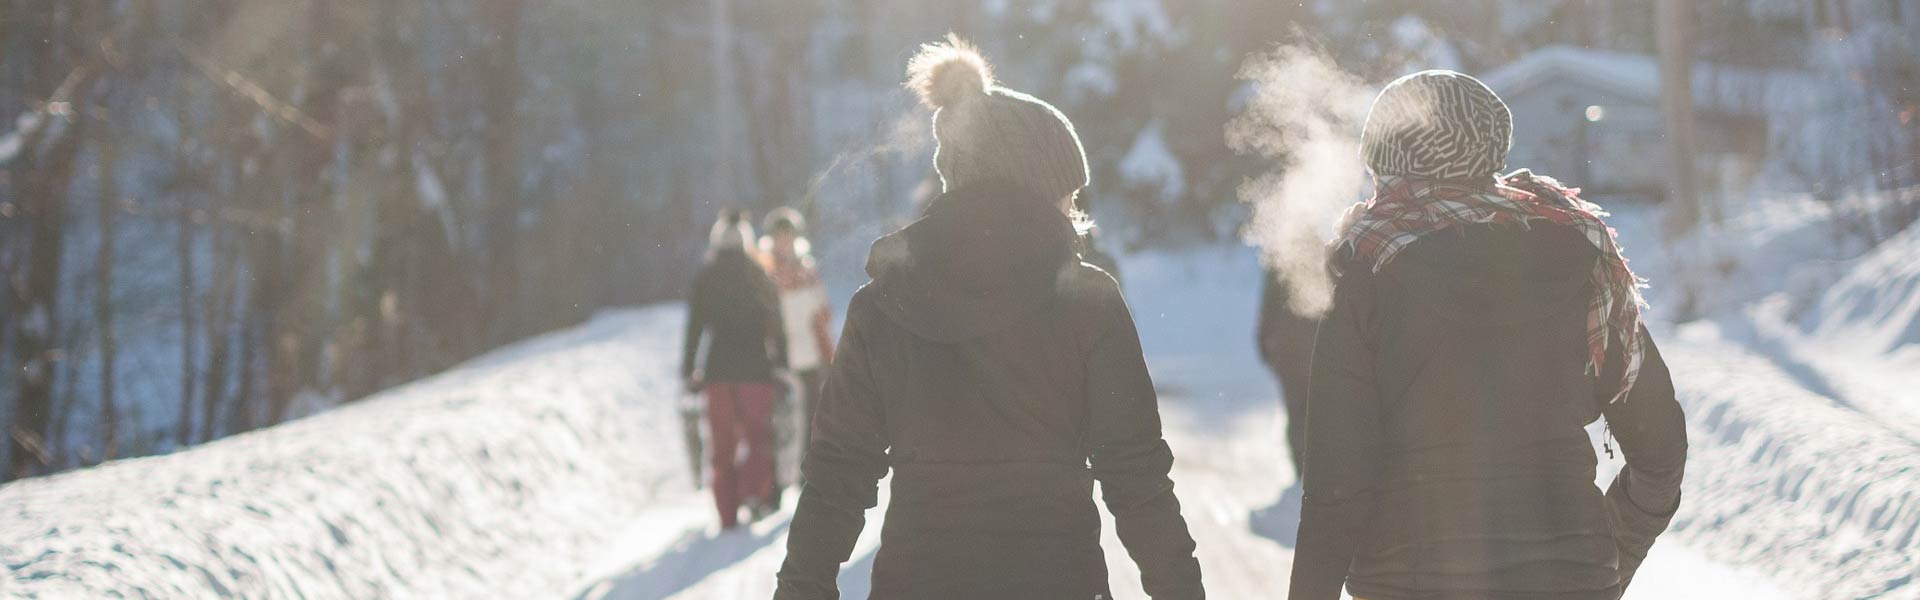 Wanderung durch die Winter-Natur mit Glühwein Weihnachtsfeier Idee b-ceed events